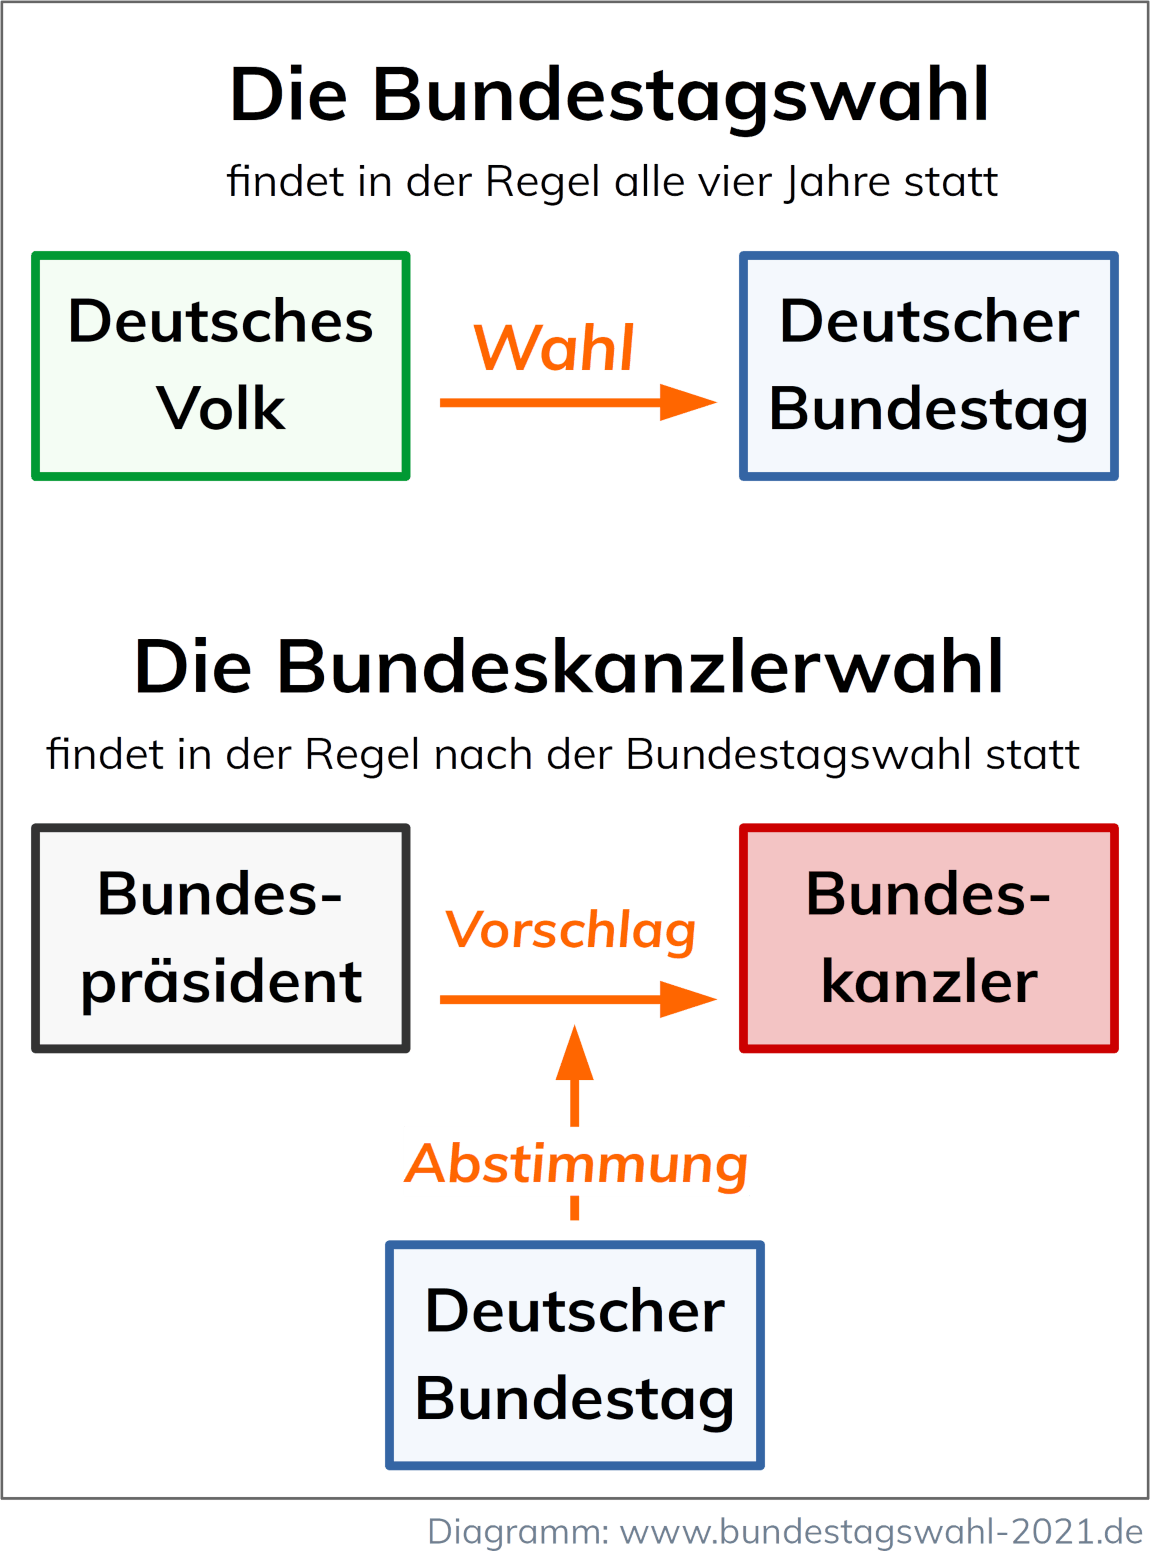 Bundestagswahl oder Bundeskanzlerwahl